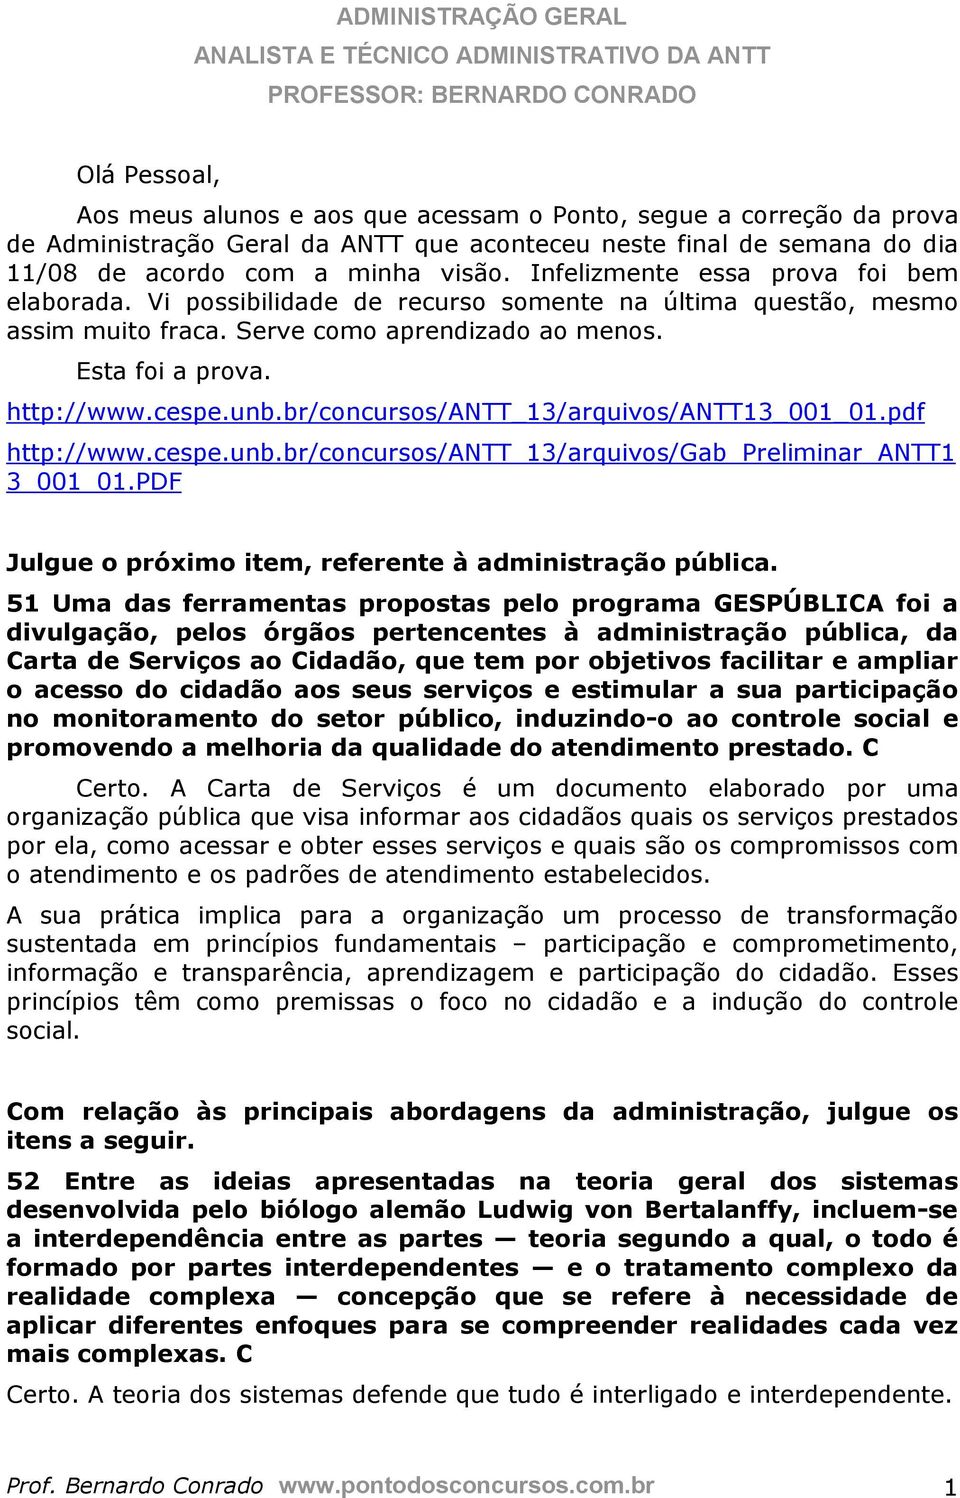 br/concursos/antt_13/arquivos/antt13_001_01.pdf http://www.cespe.unb.br/concursos/antt_13/arquivos/gab_preliminar_antt1 3_001_01.PDF Julgue o próximo item, referente à administração pública.